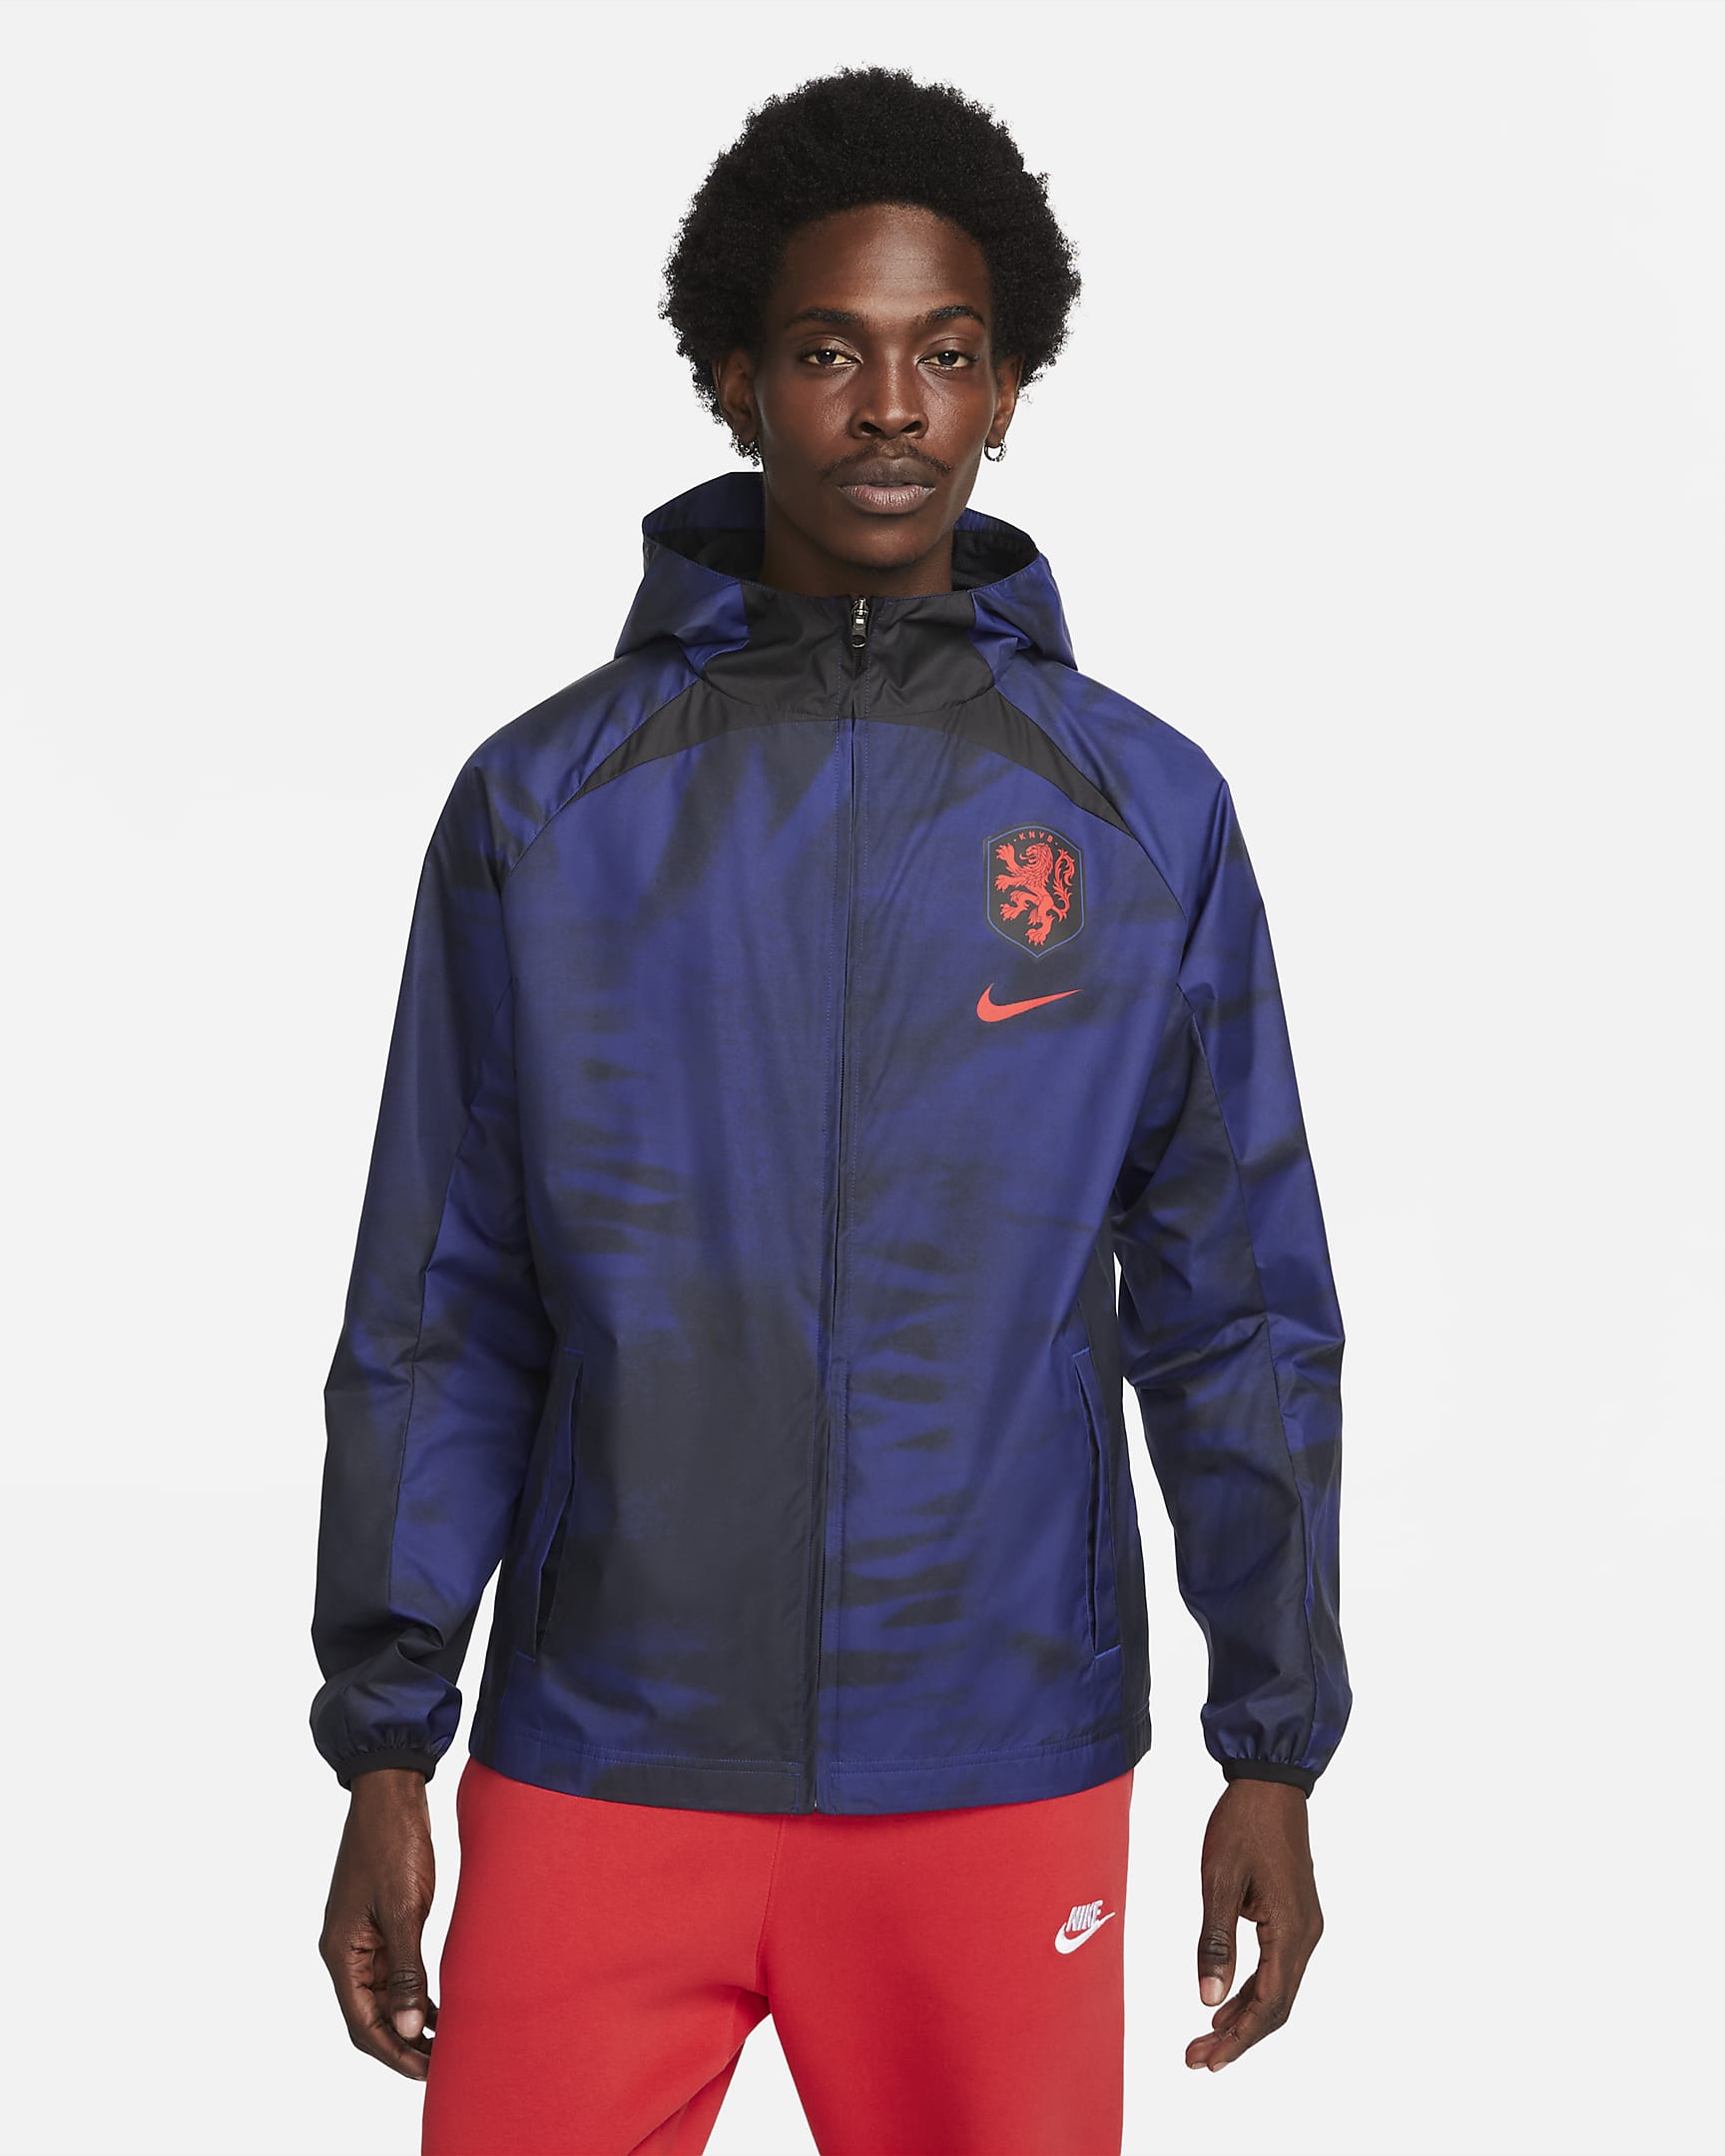 Netherlands AWF Men's Full-Zip Soccer Jacket. Nike.com